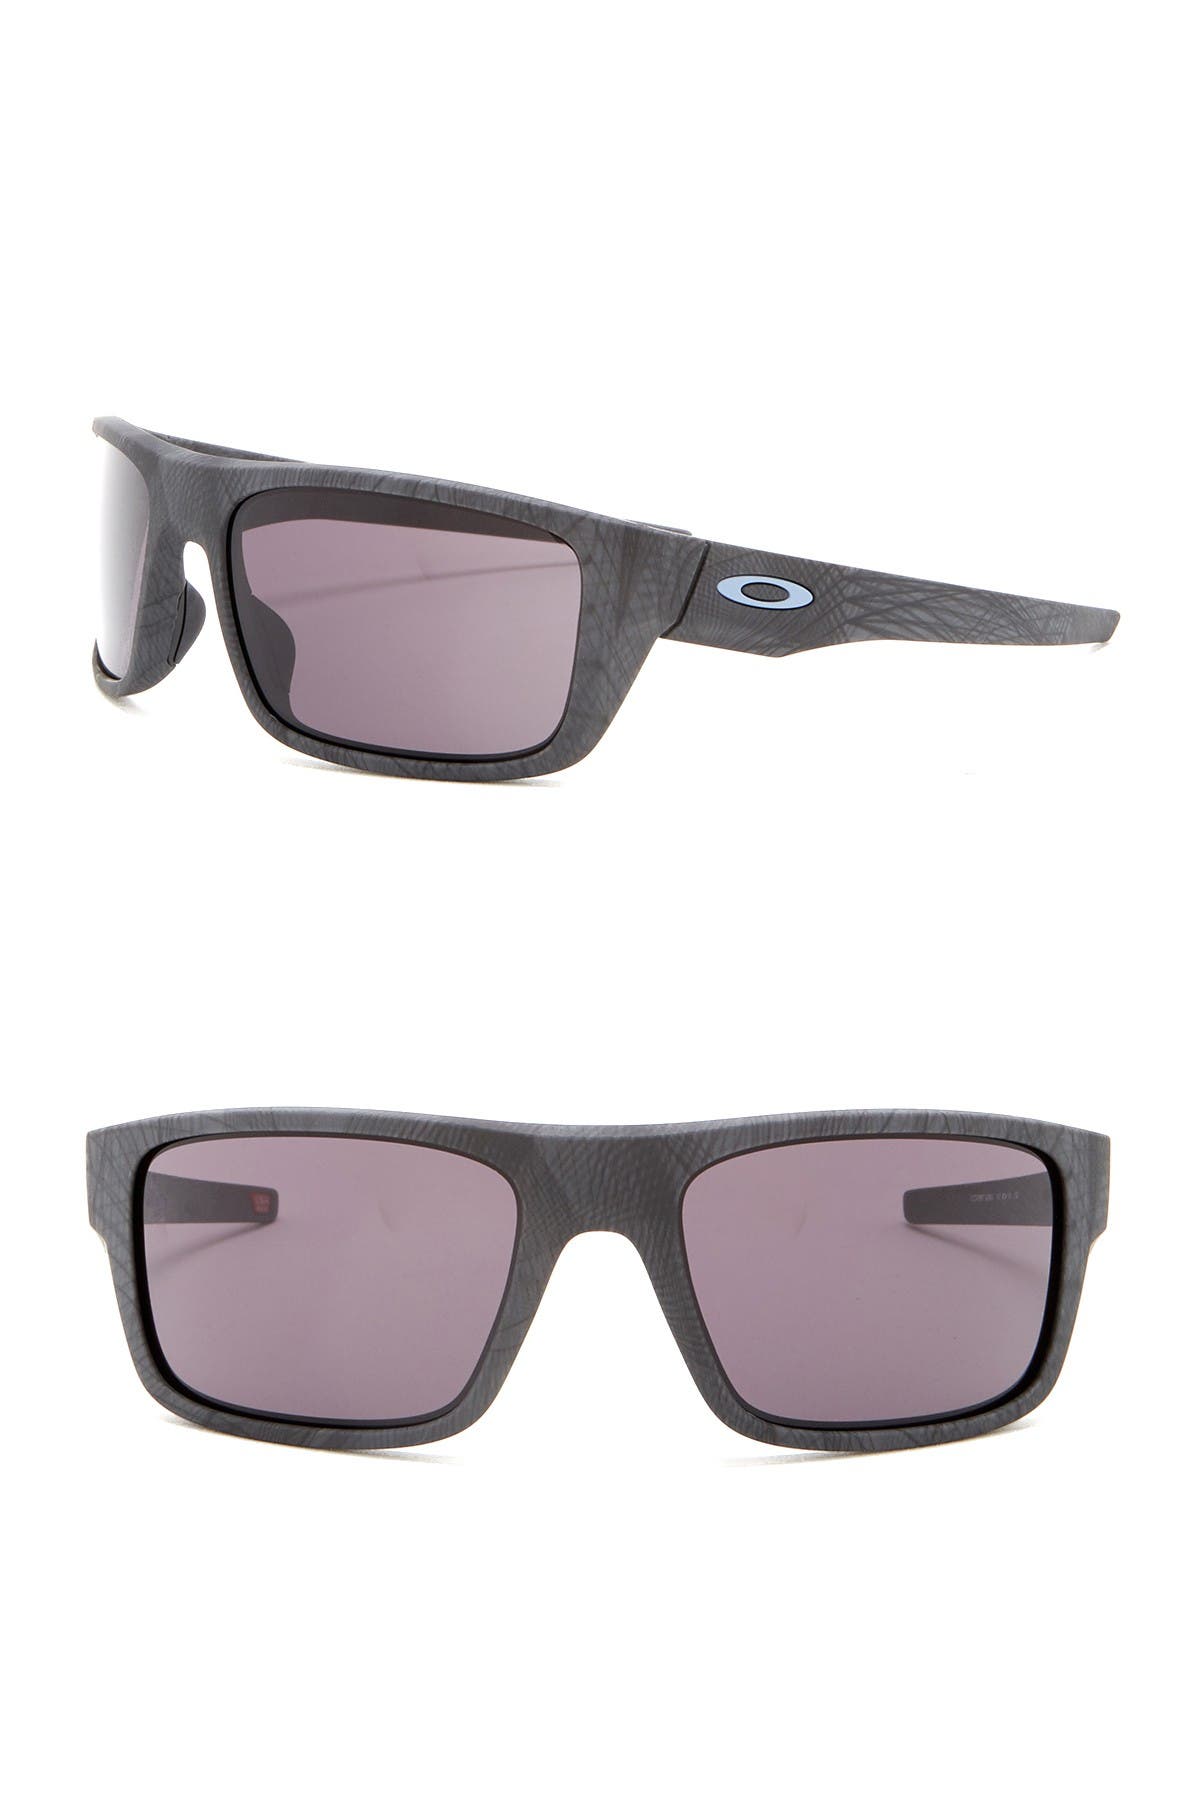 nordstrom rack oakley sunglasses